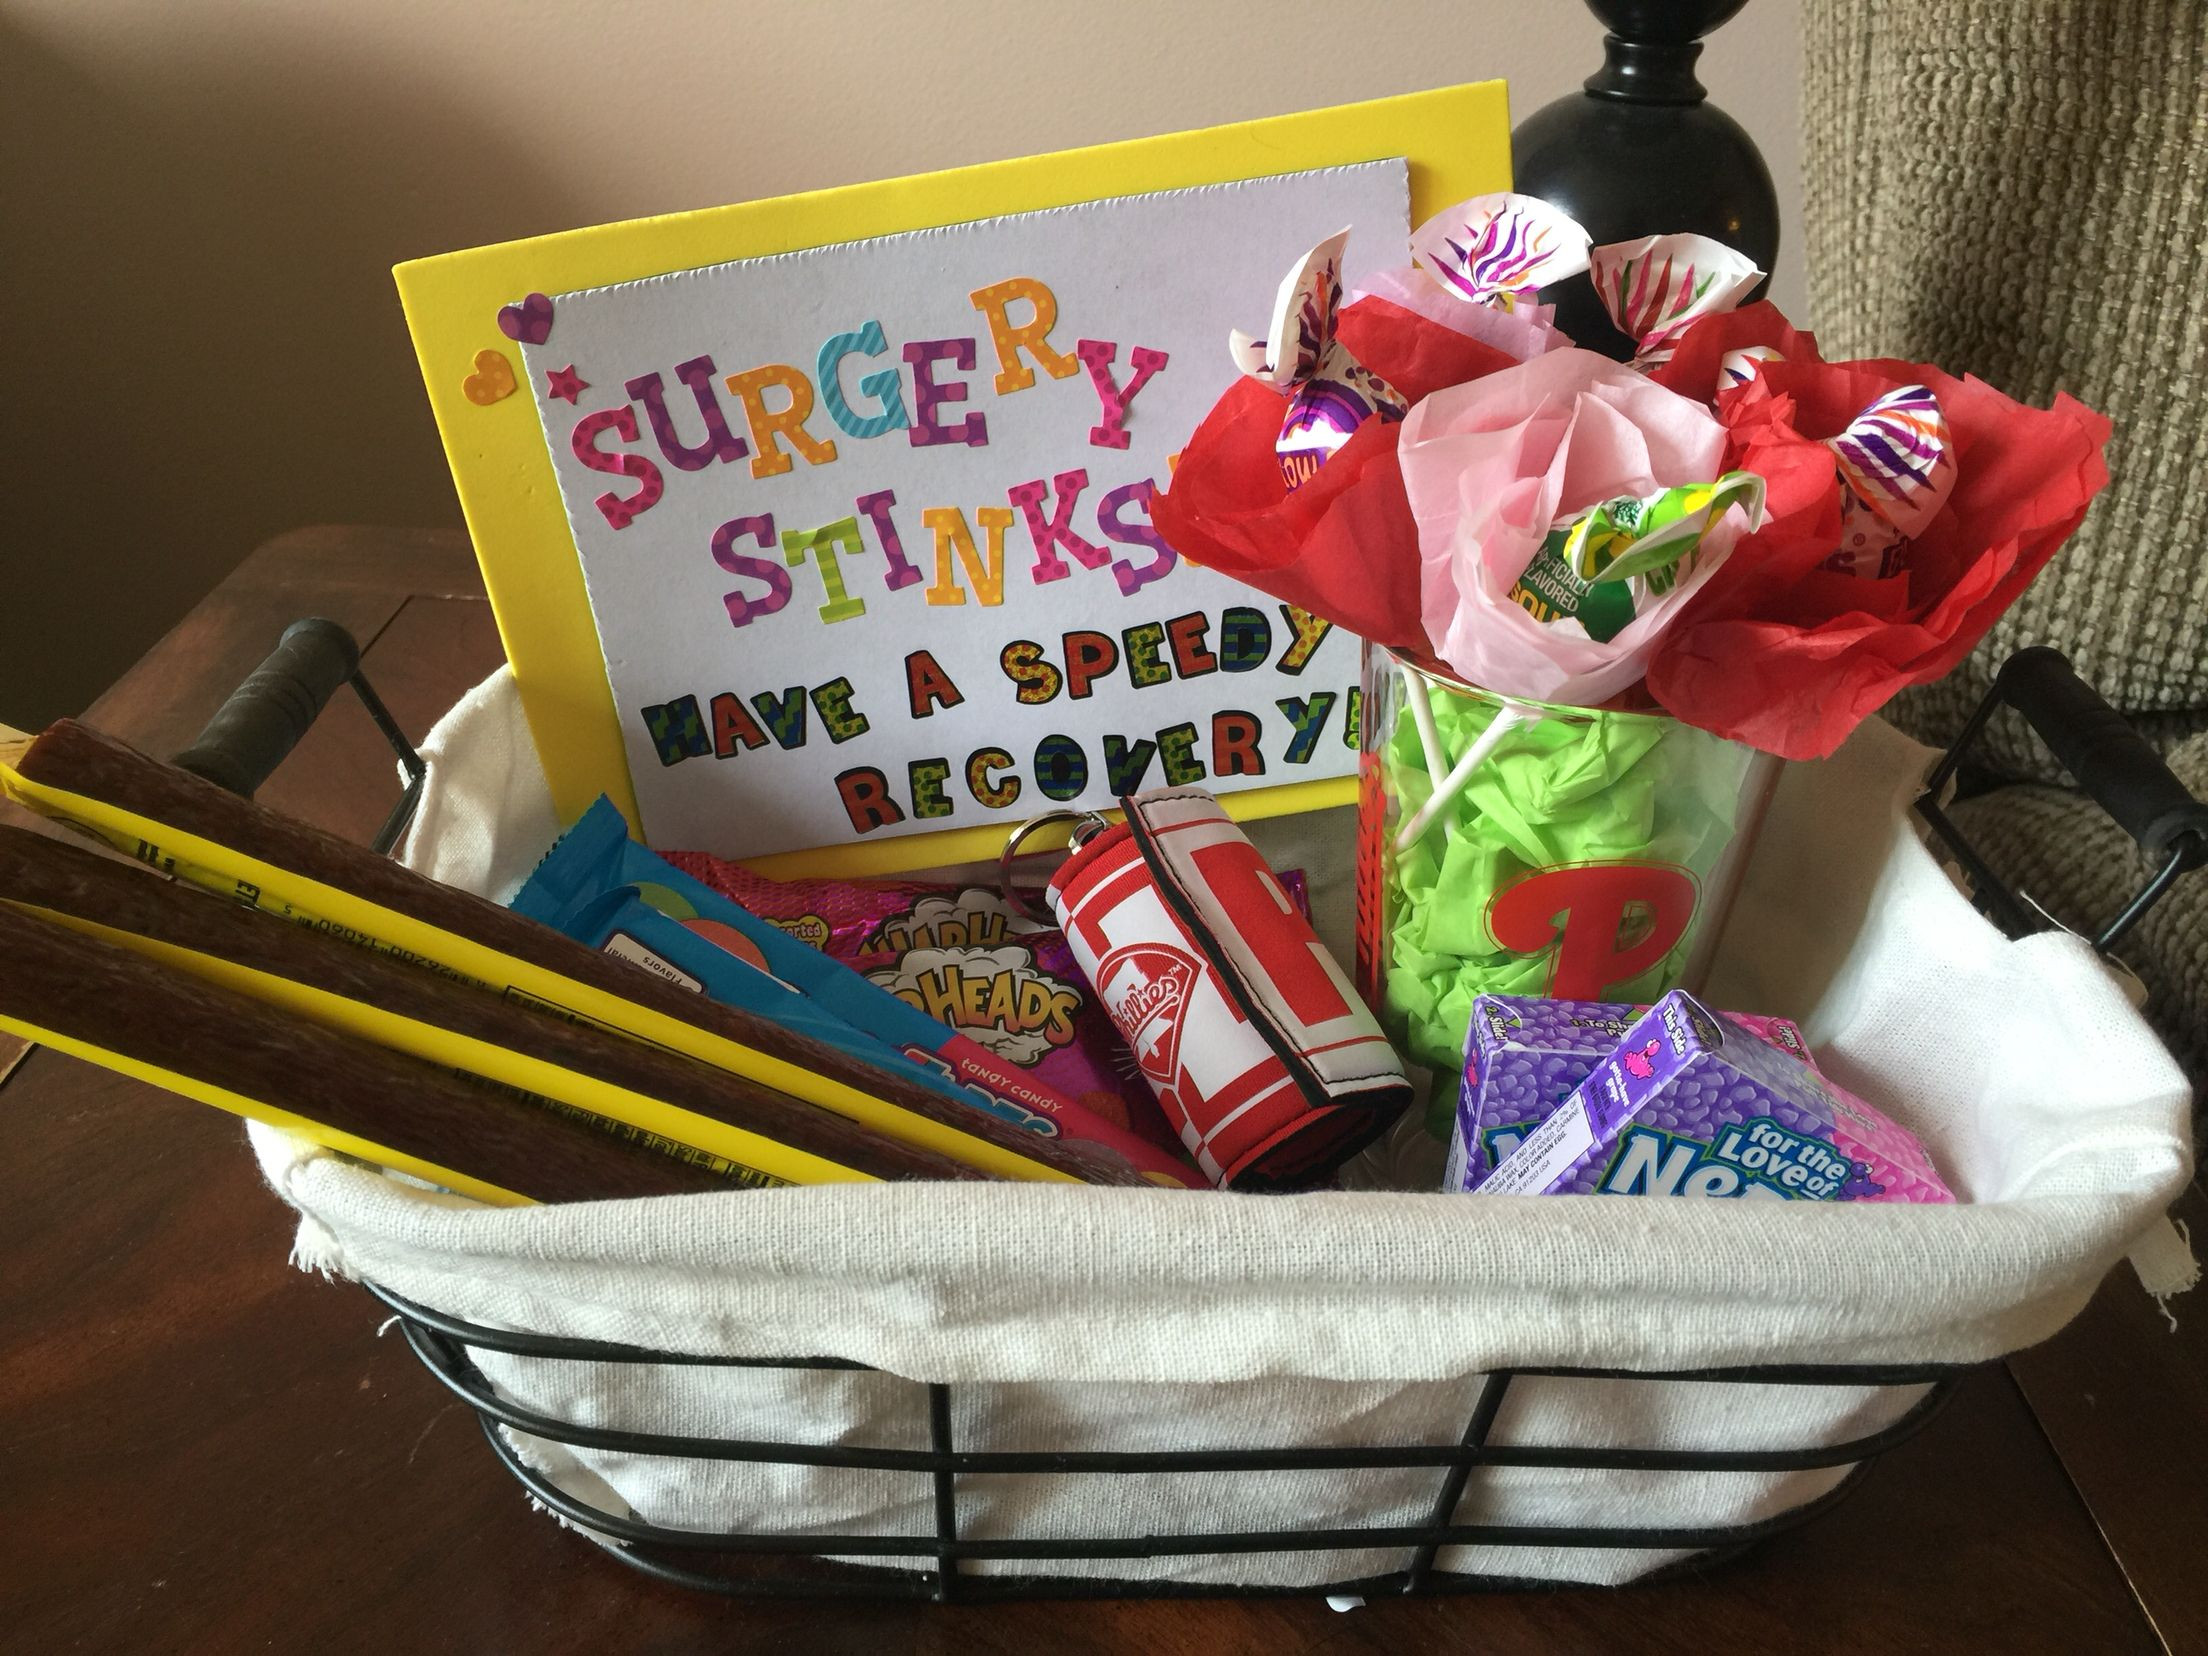 Get Well Gift Basket Ideas After Surgery
 After surgery t basket speedyrecovery well